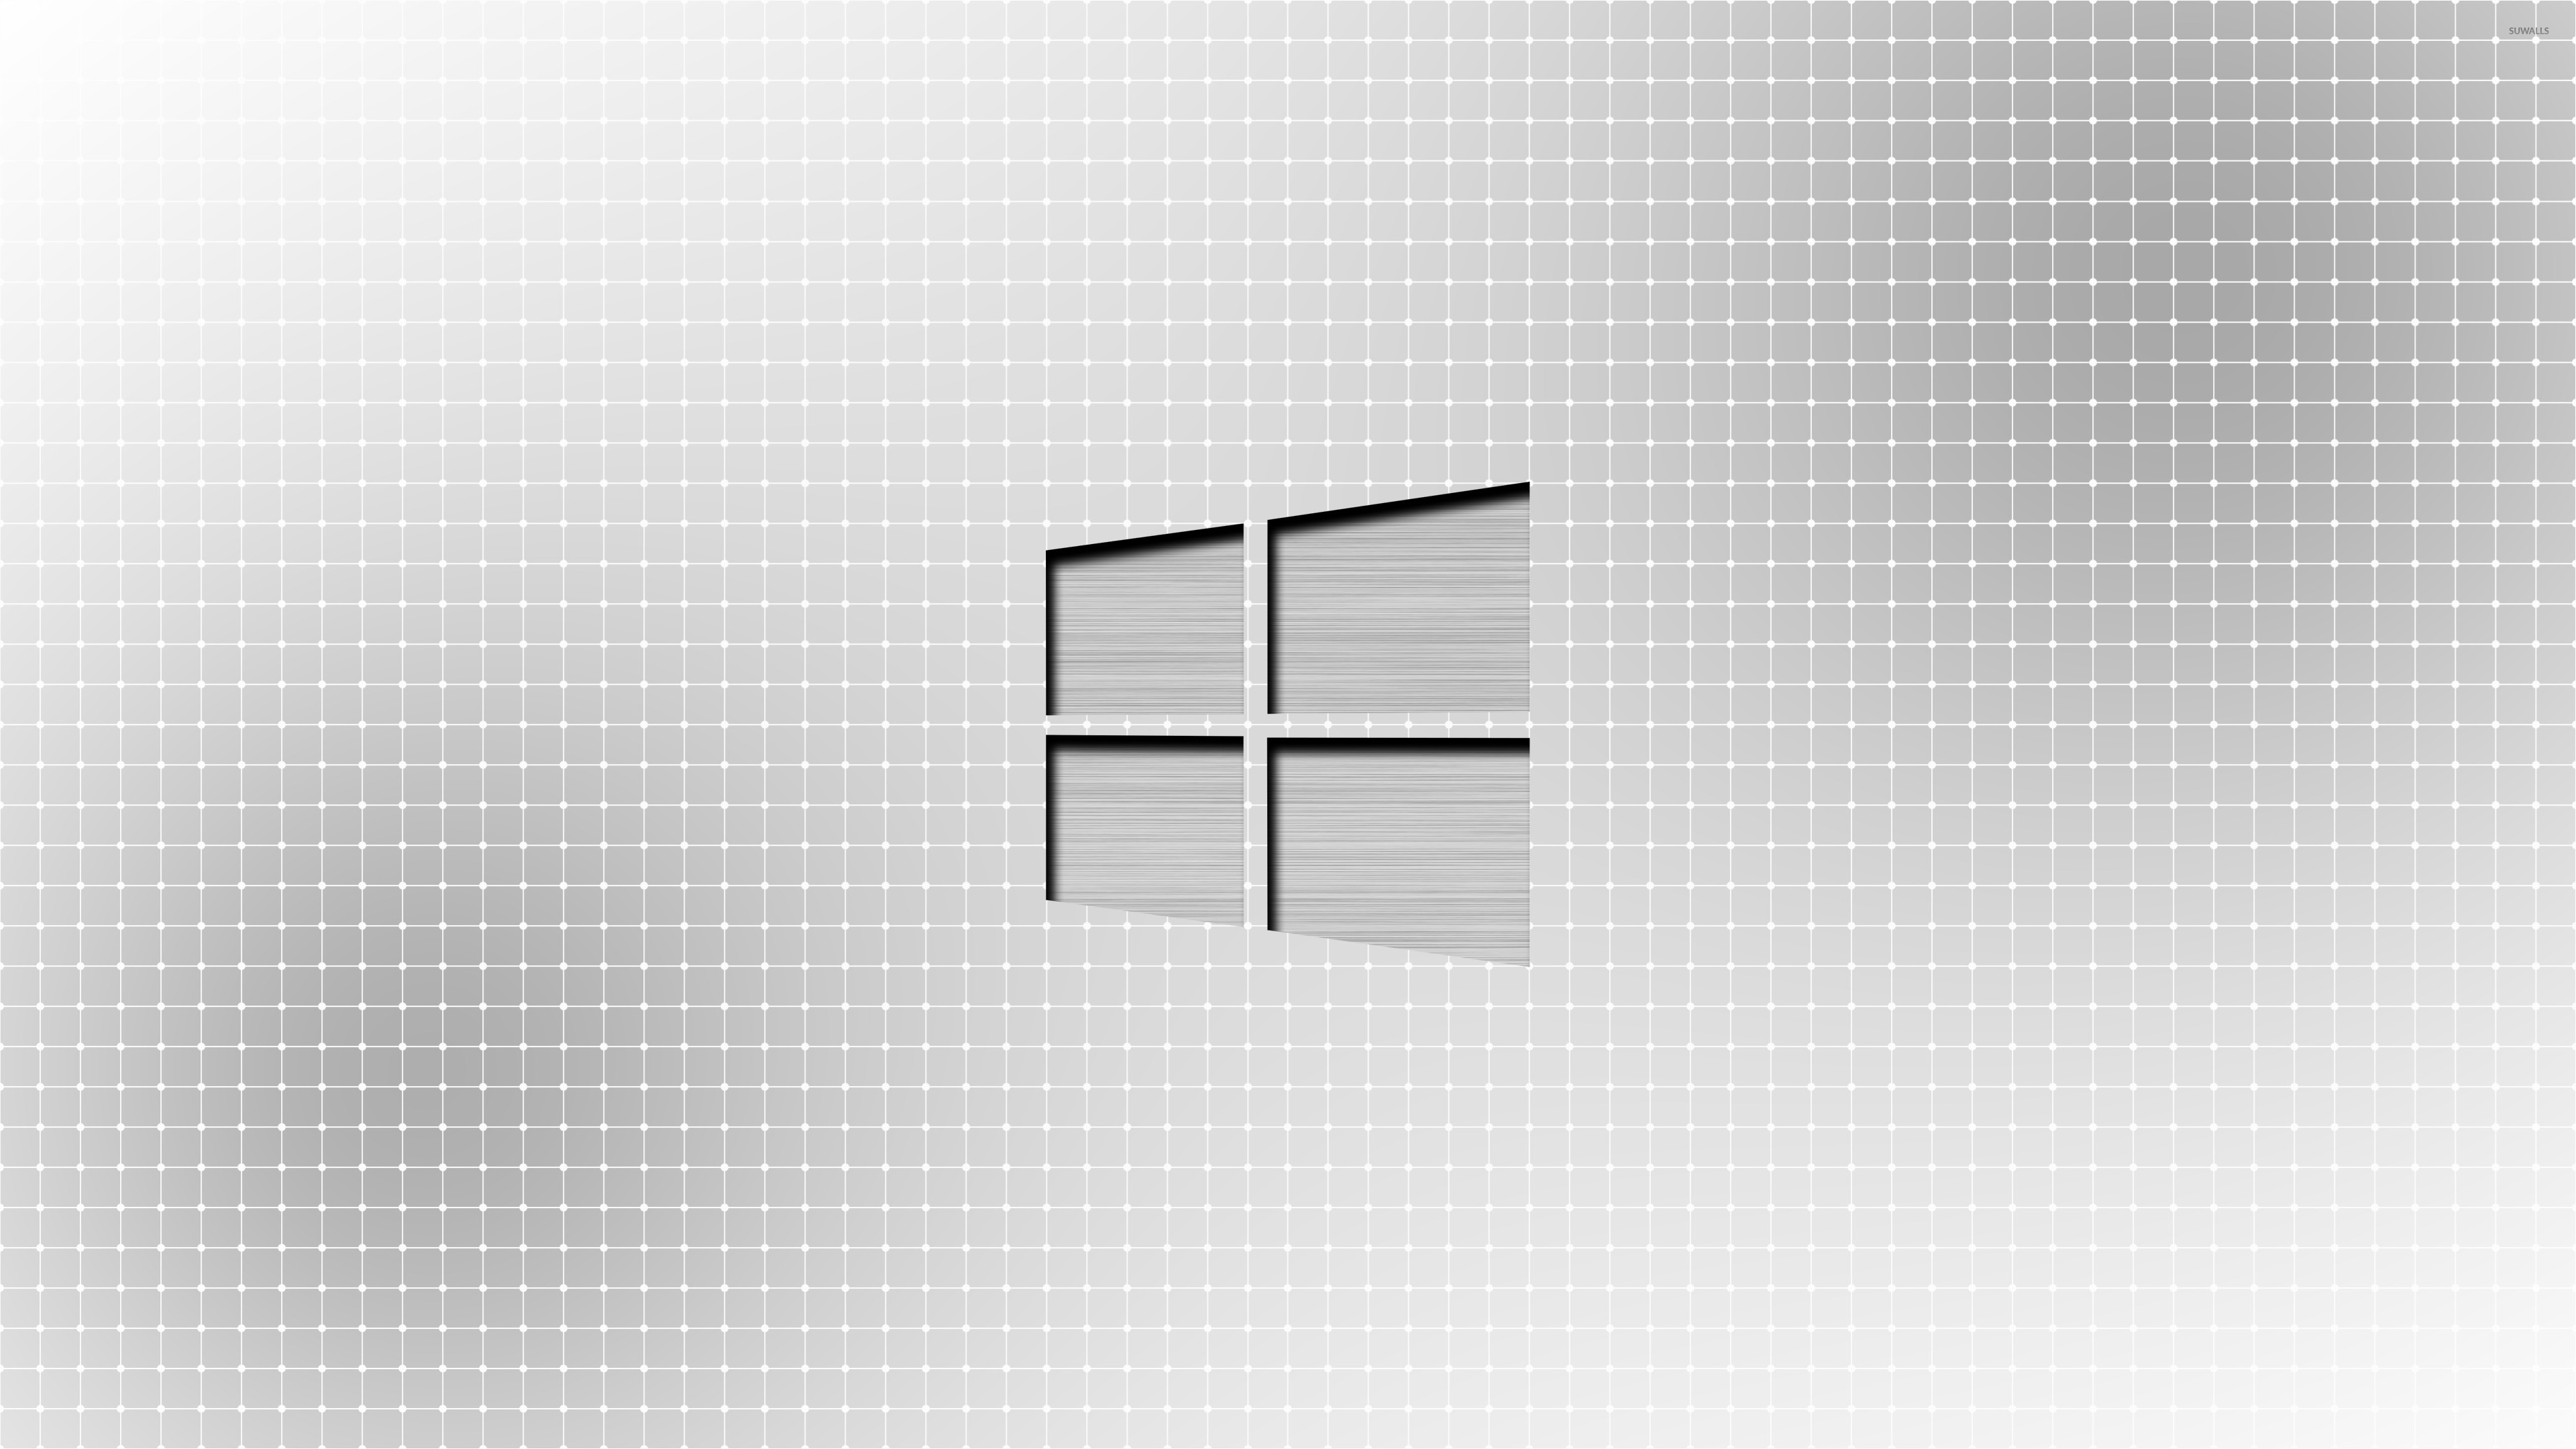 Metal Windows On A Light Grid Wallpaper Puter